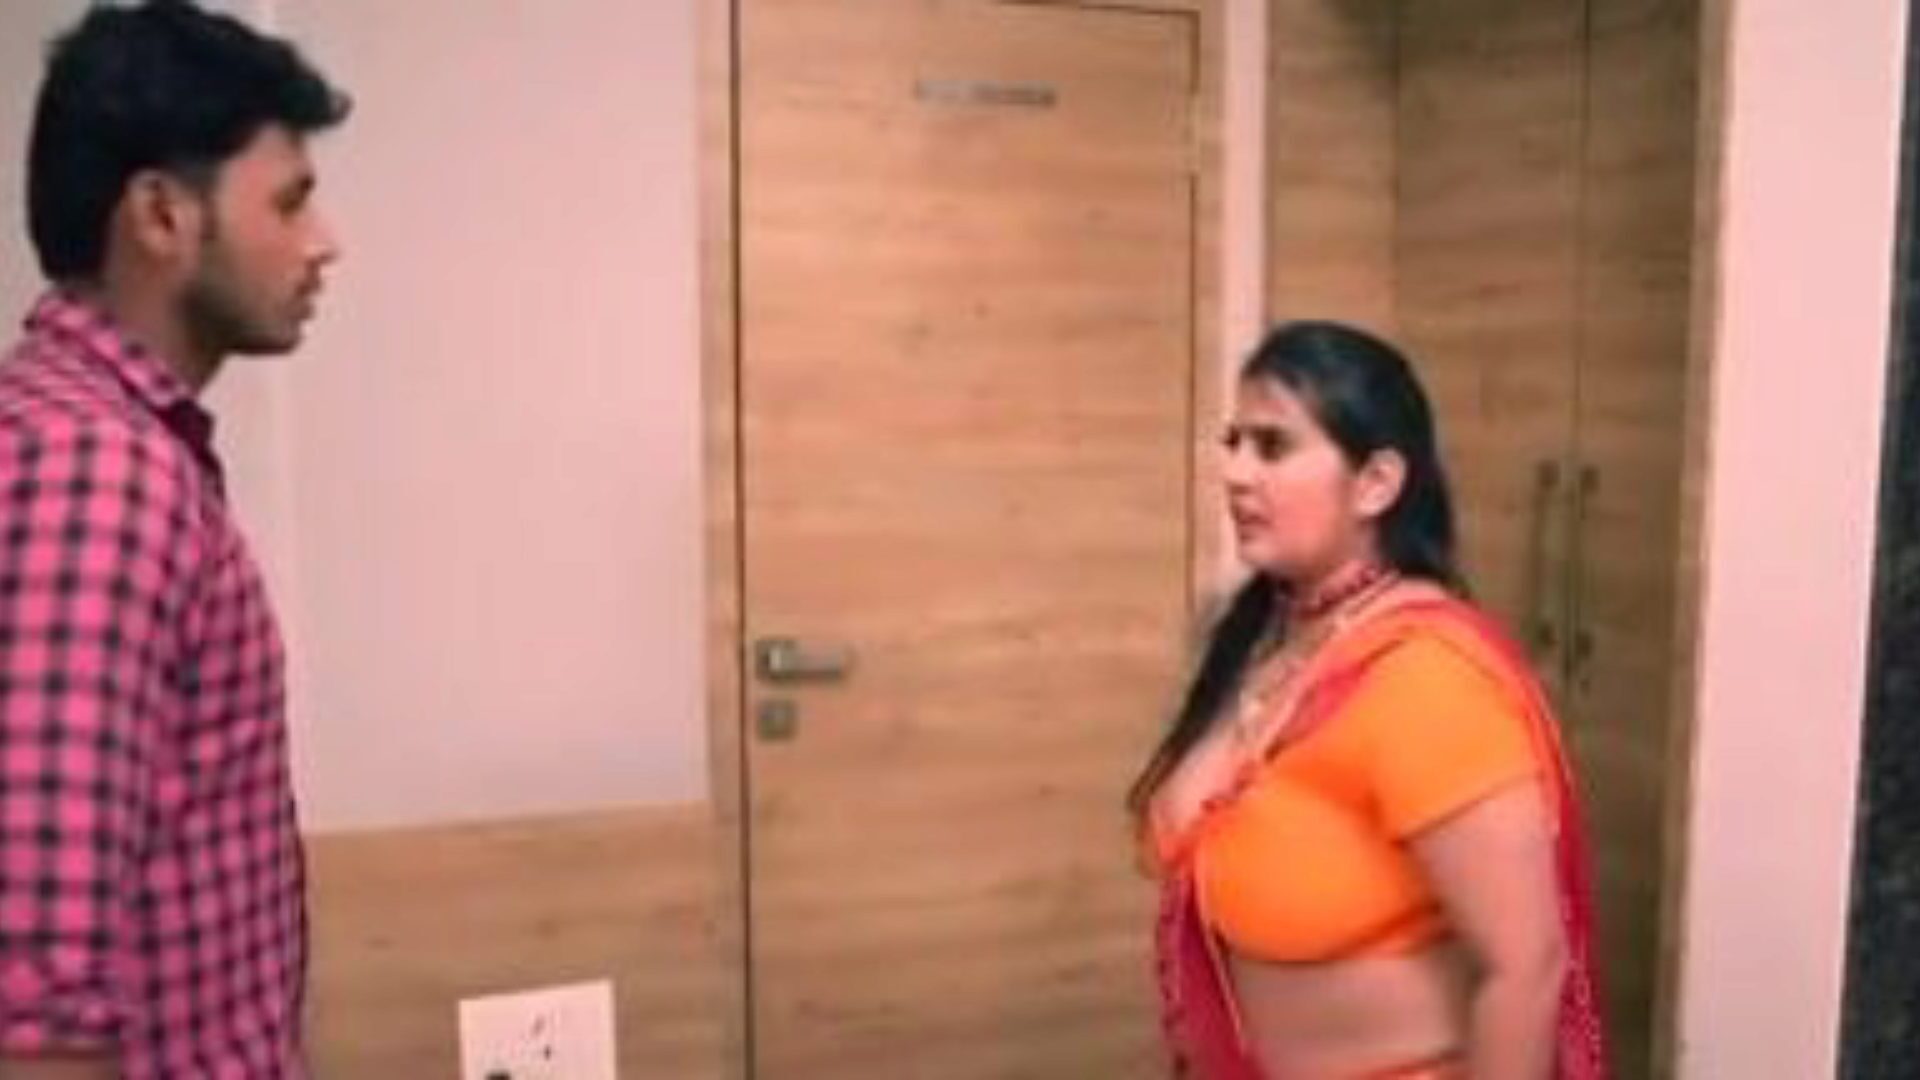 kanchan aunty ep5: δωρεάν aunty xxx πορνό βίντεο 03 - xhamster παρακολουθήστε kanchan aunty ep5 tube σκηνή ταινίας αγάπης για δωρεάν στο xhamster, με την ανώτερη γκάμα του bunladeshi aunty xxx & aunty mobile porno movie vignettes